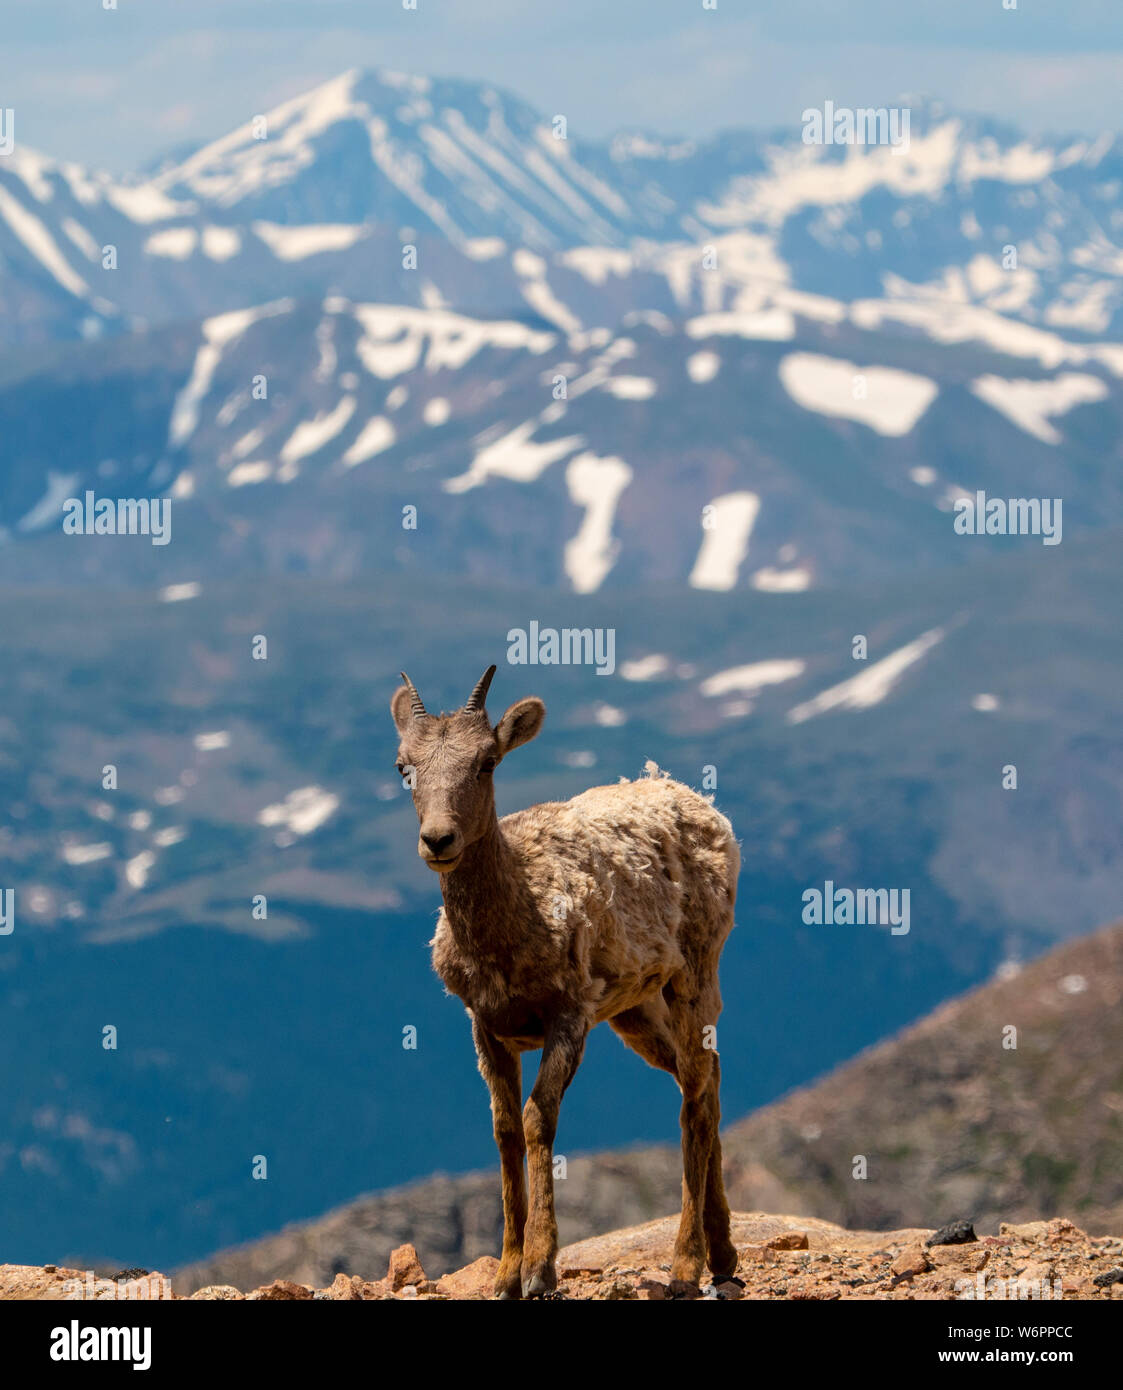 Mountain Goat on Mount Evans Stock Photo